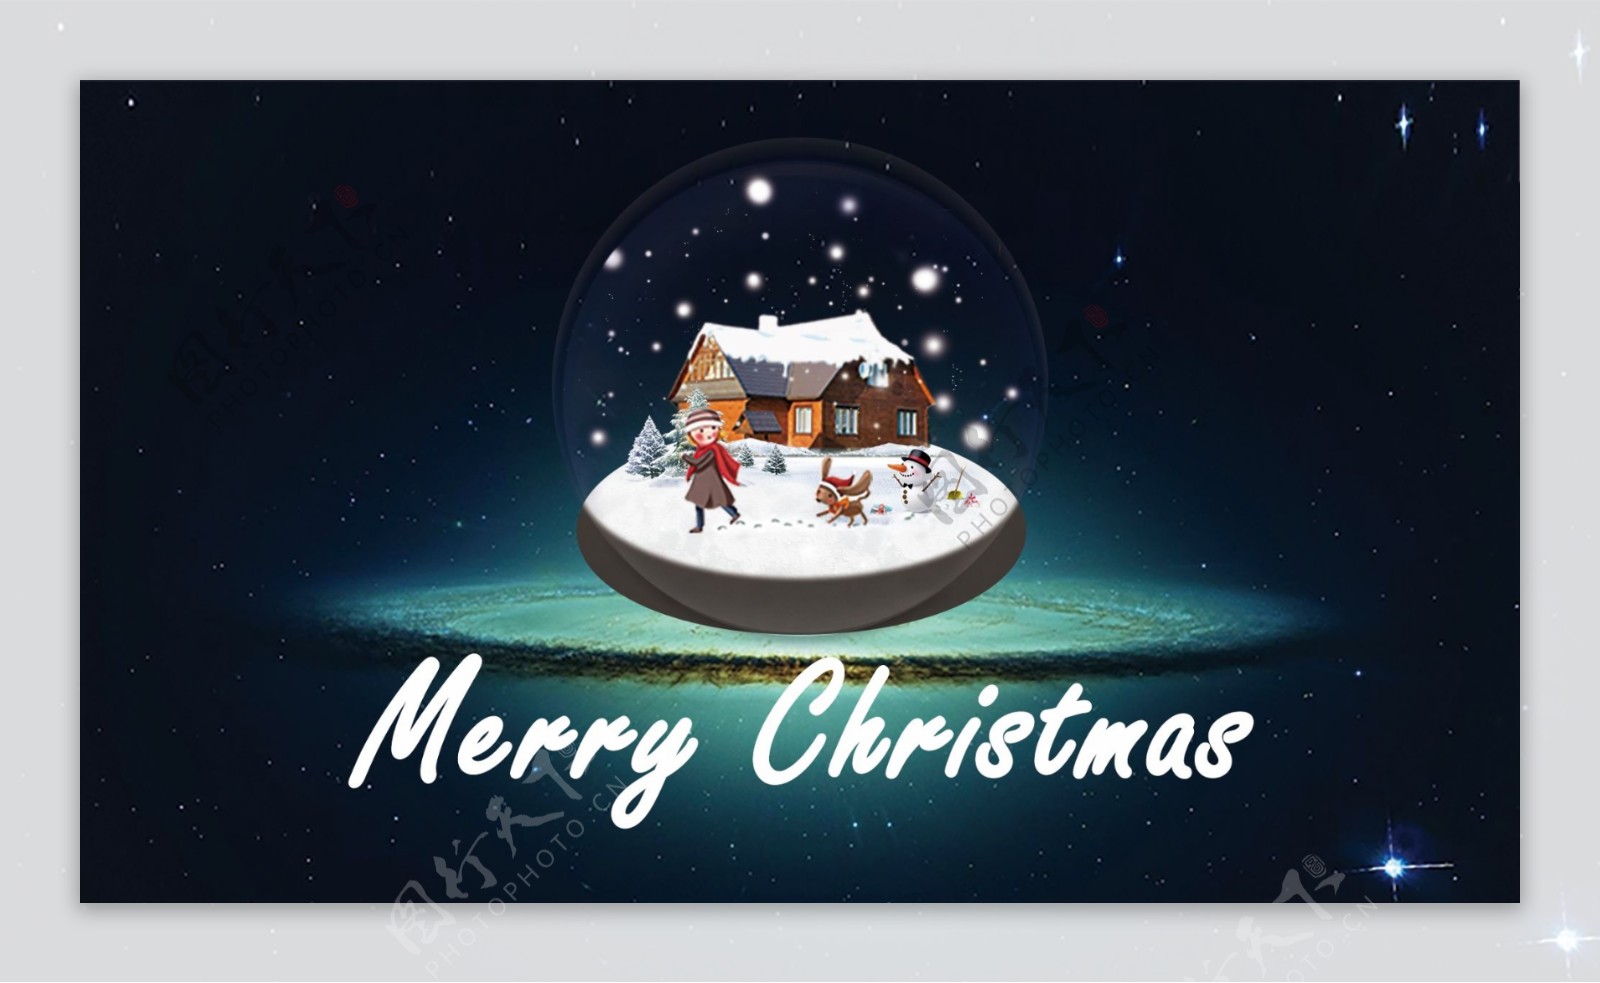 圣诞快乐网页banner